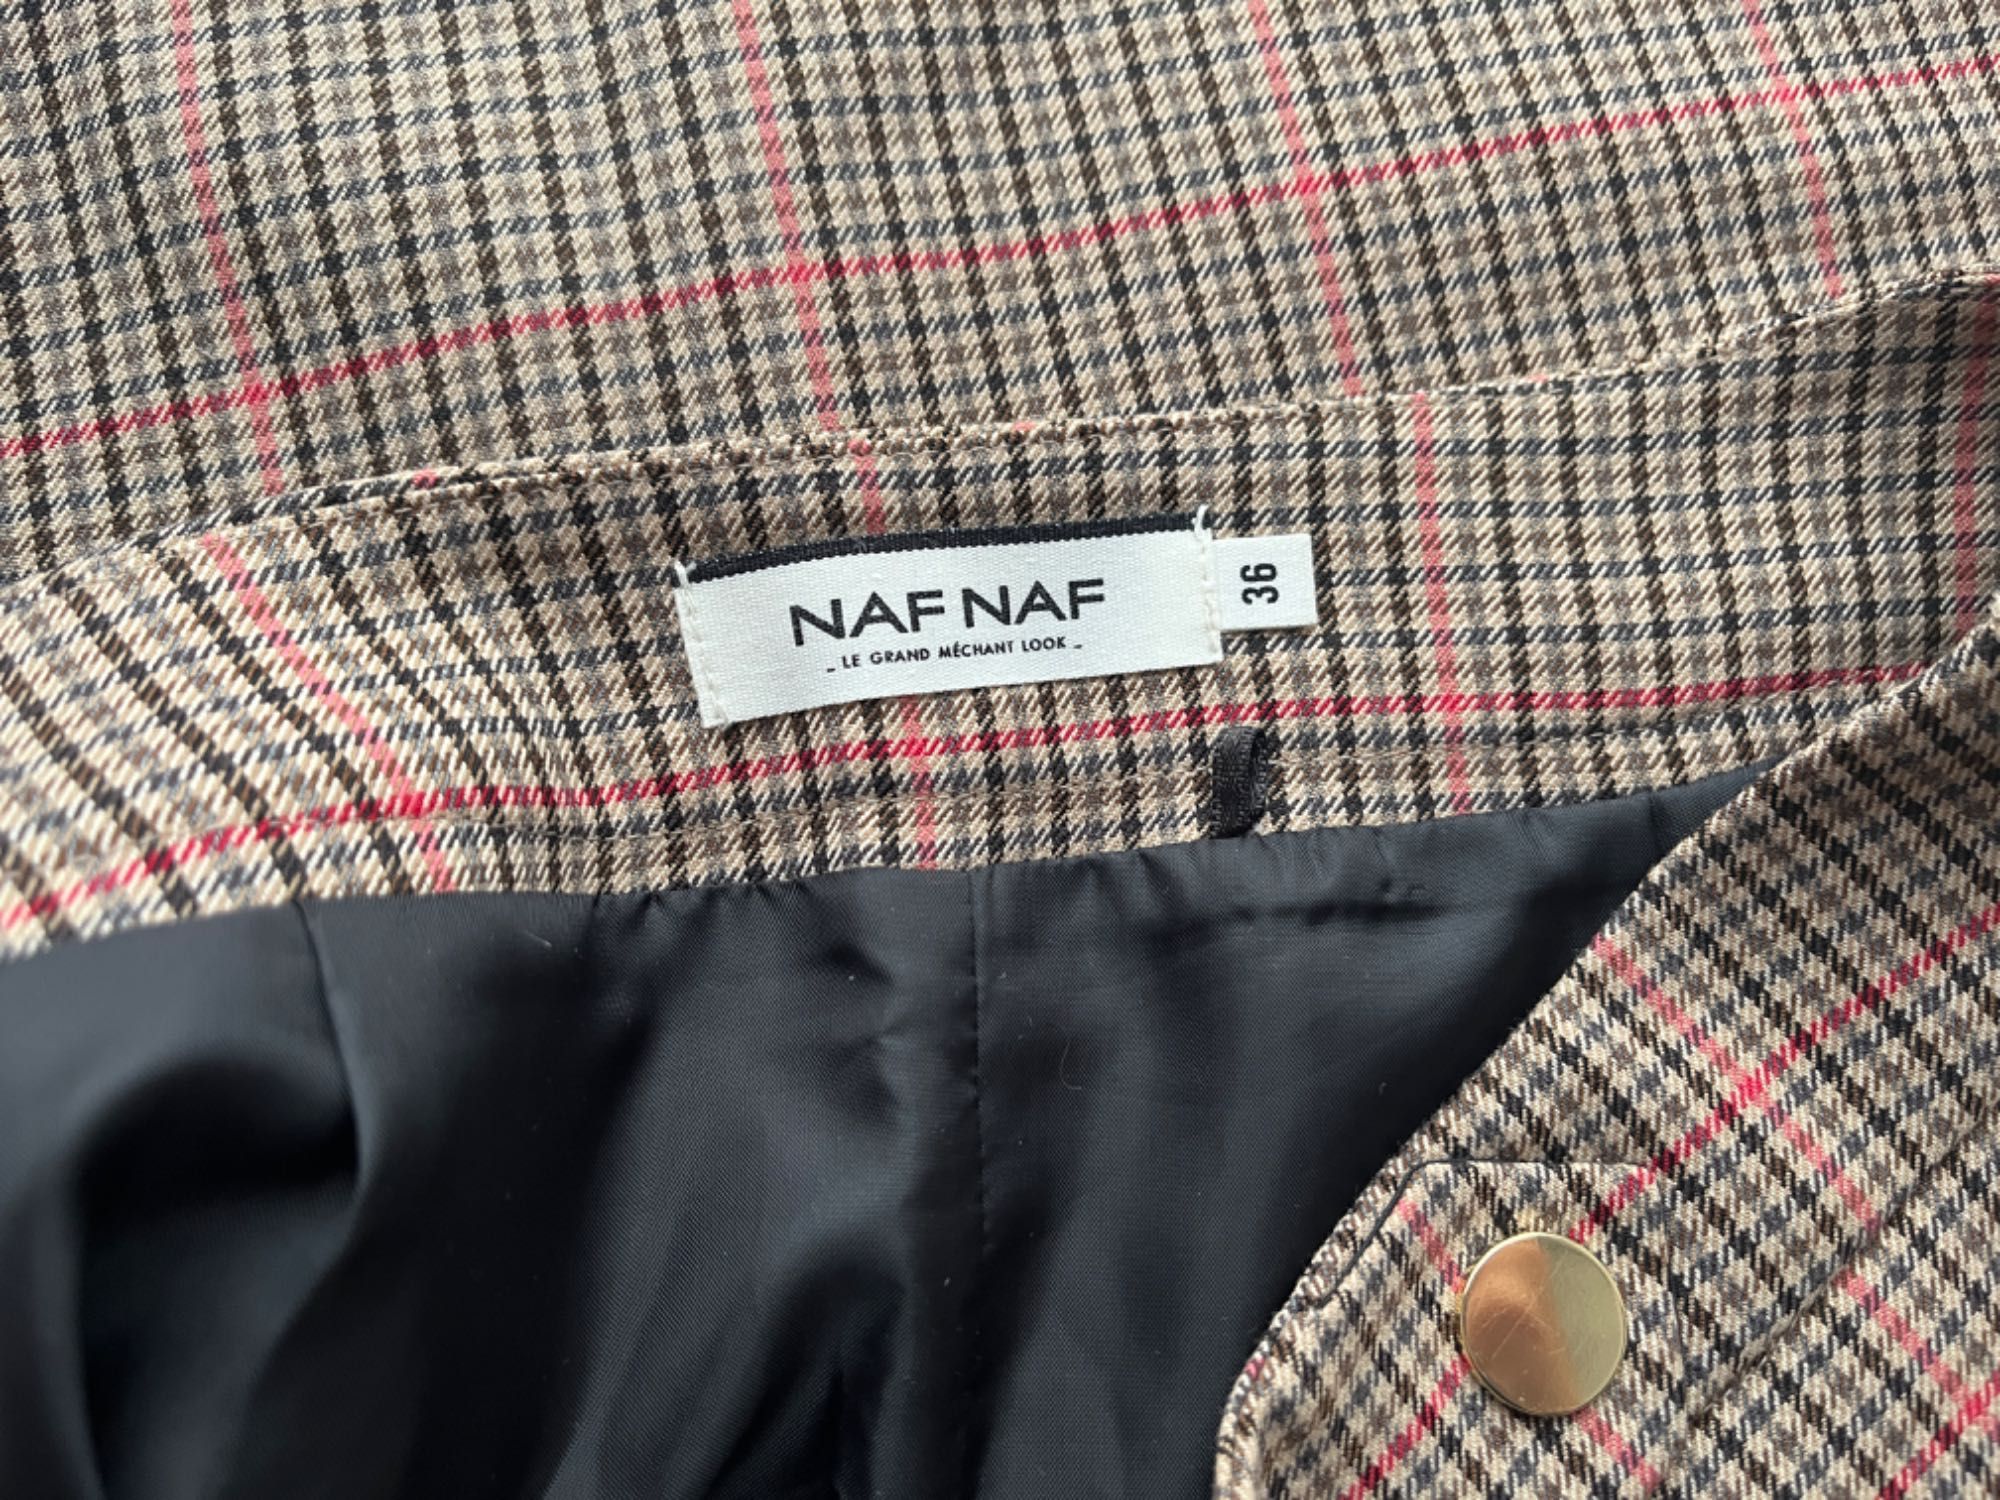 NAFNAF spódnica mini elegancka 36 S Naf Naf w kratkę kratka